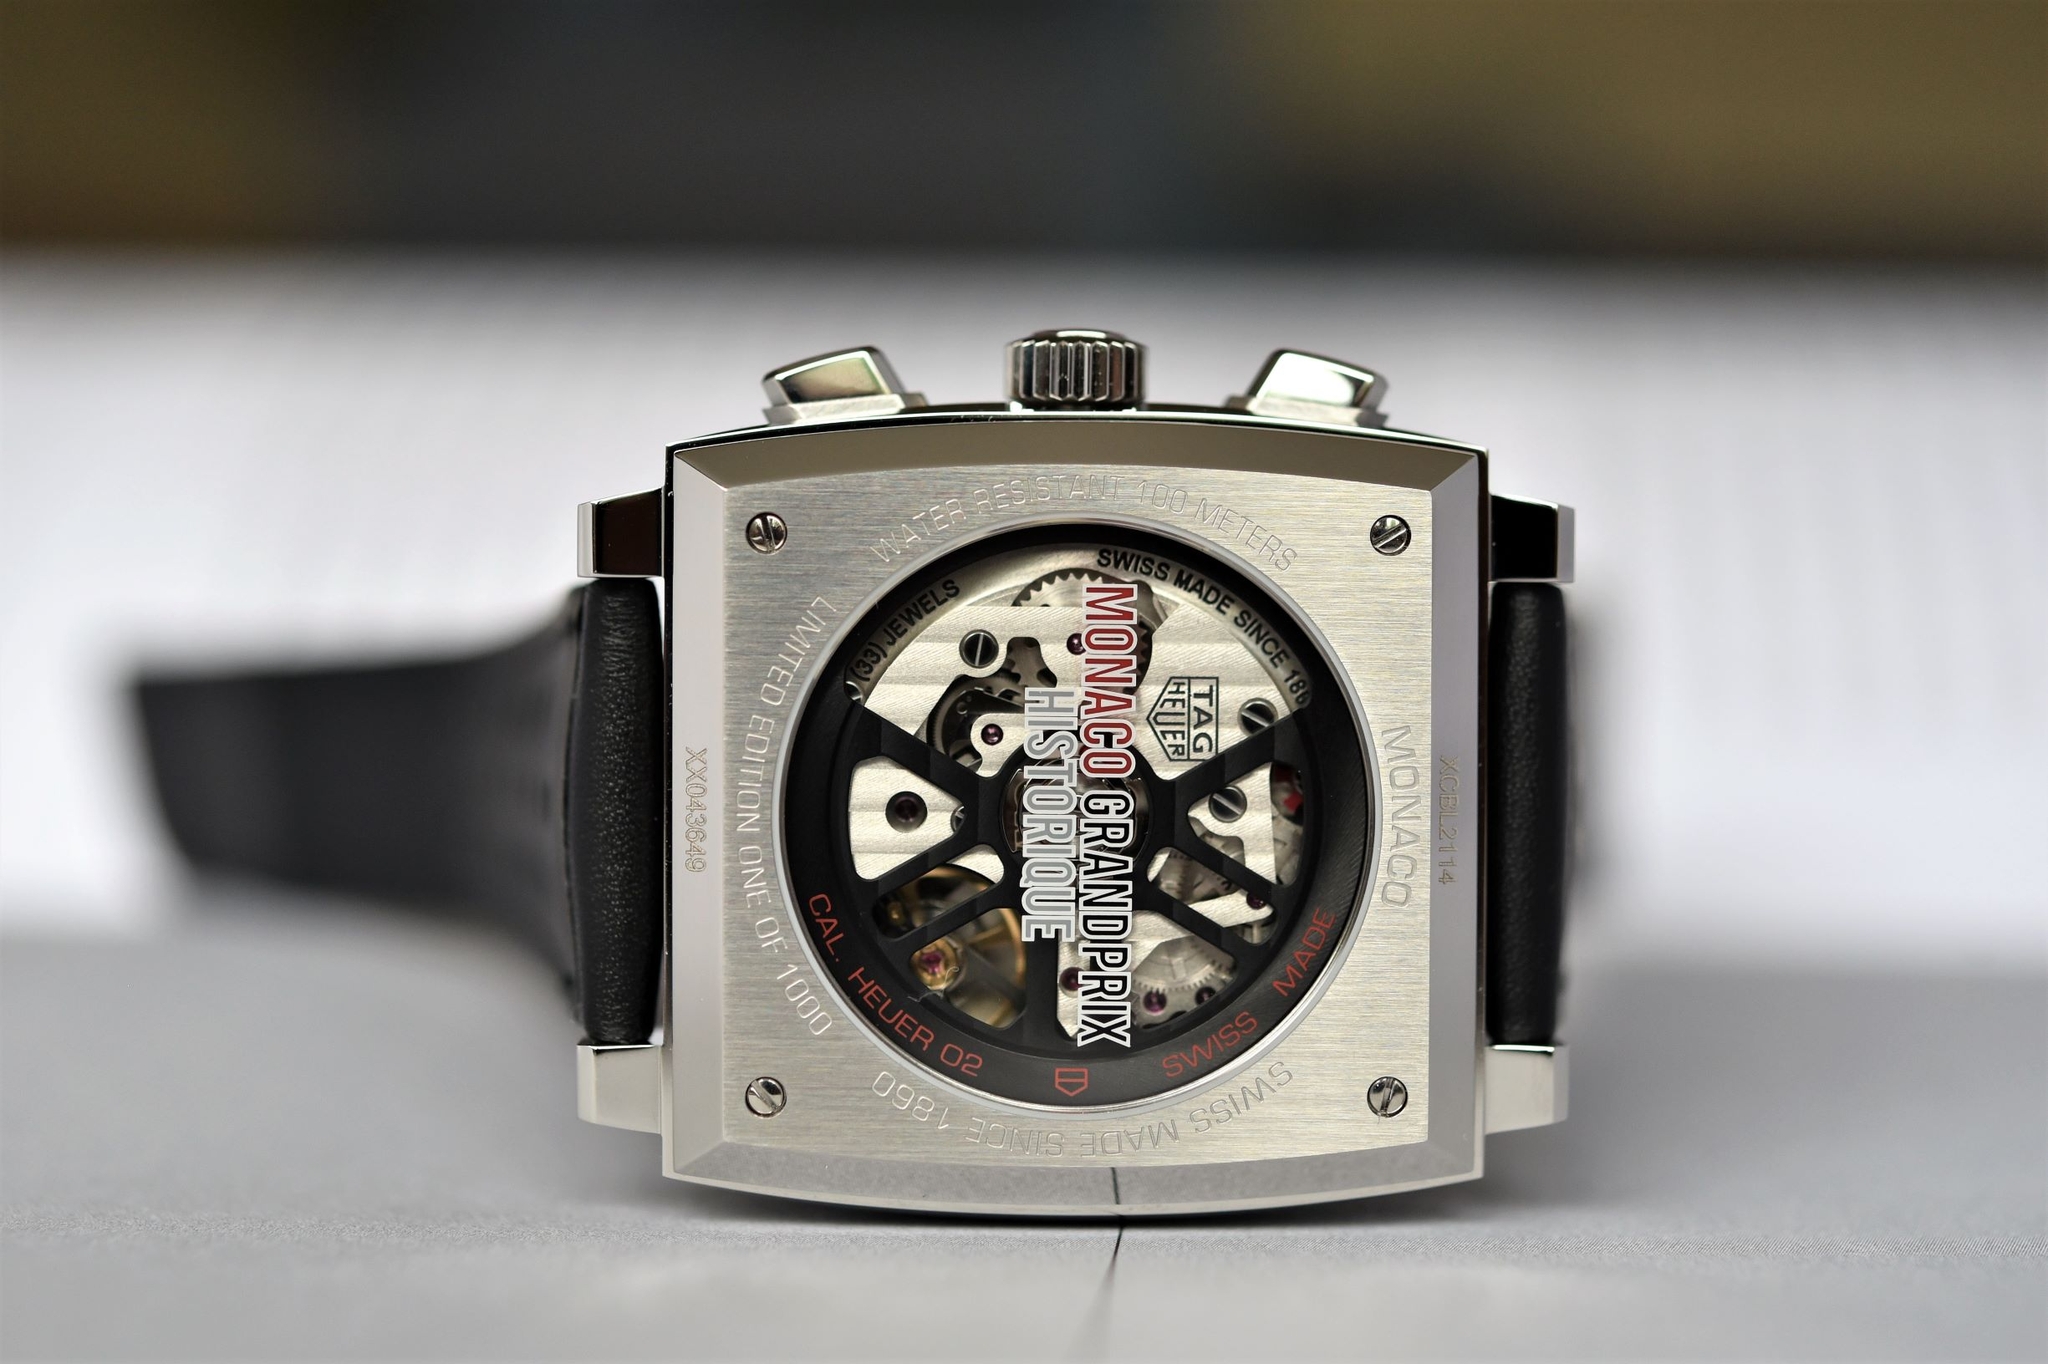 Đồng hồ TAG Heuer Monaco Grand Prix de Monaco Historique Limited Edition